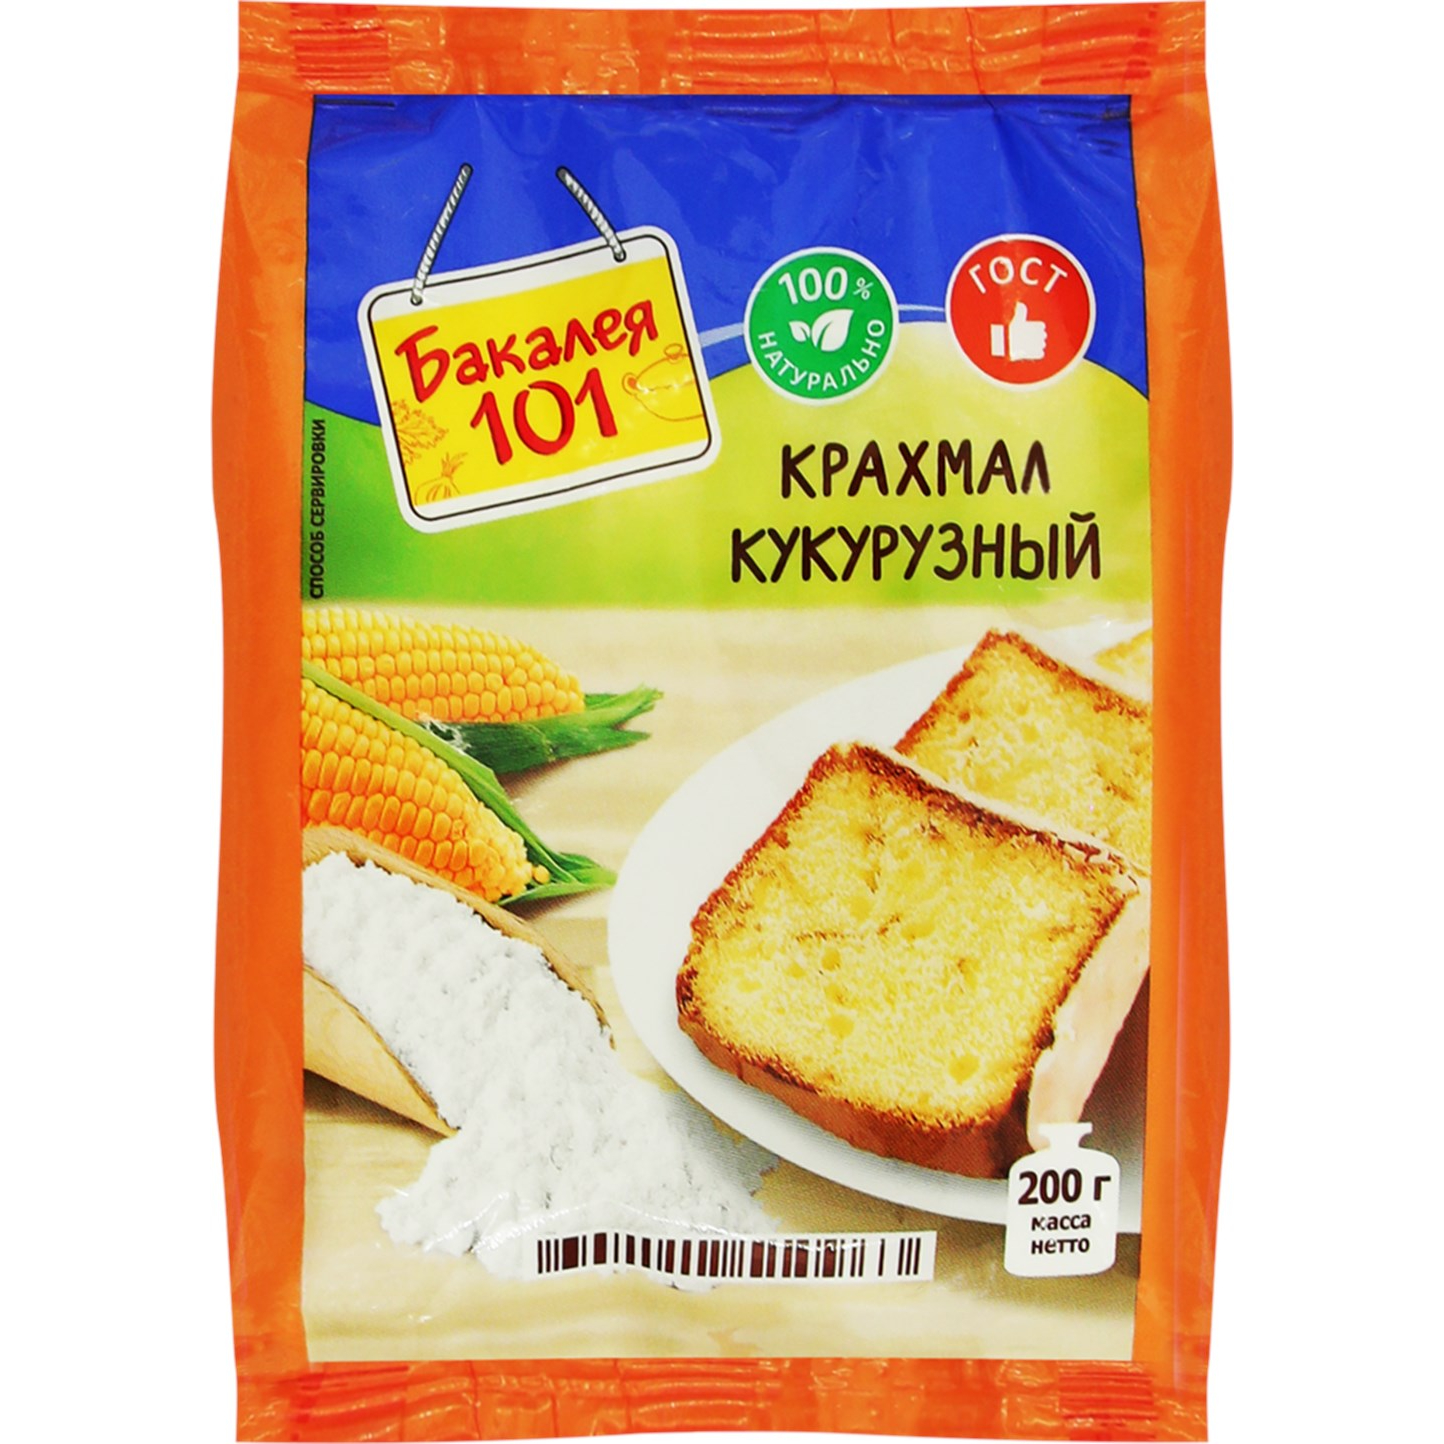 Крахмал кукурузный Русский продукт Бакалея 101 200 г крахмал кукурузный preston 200 г